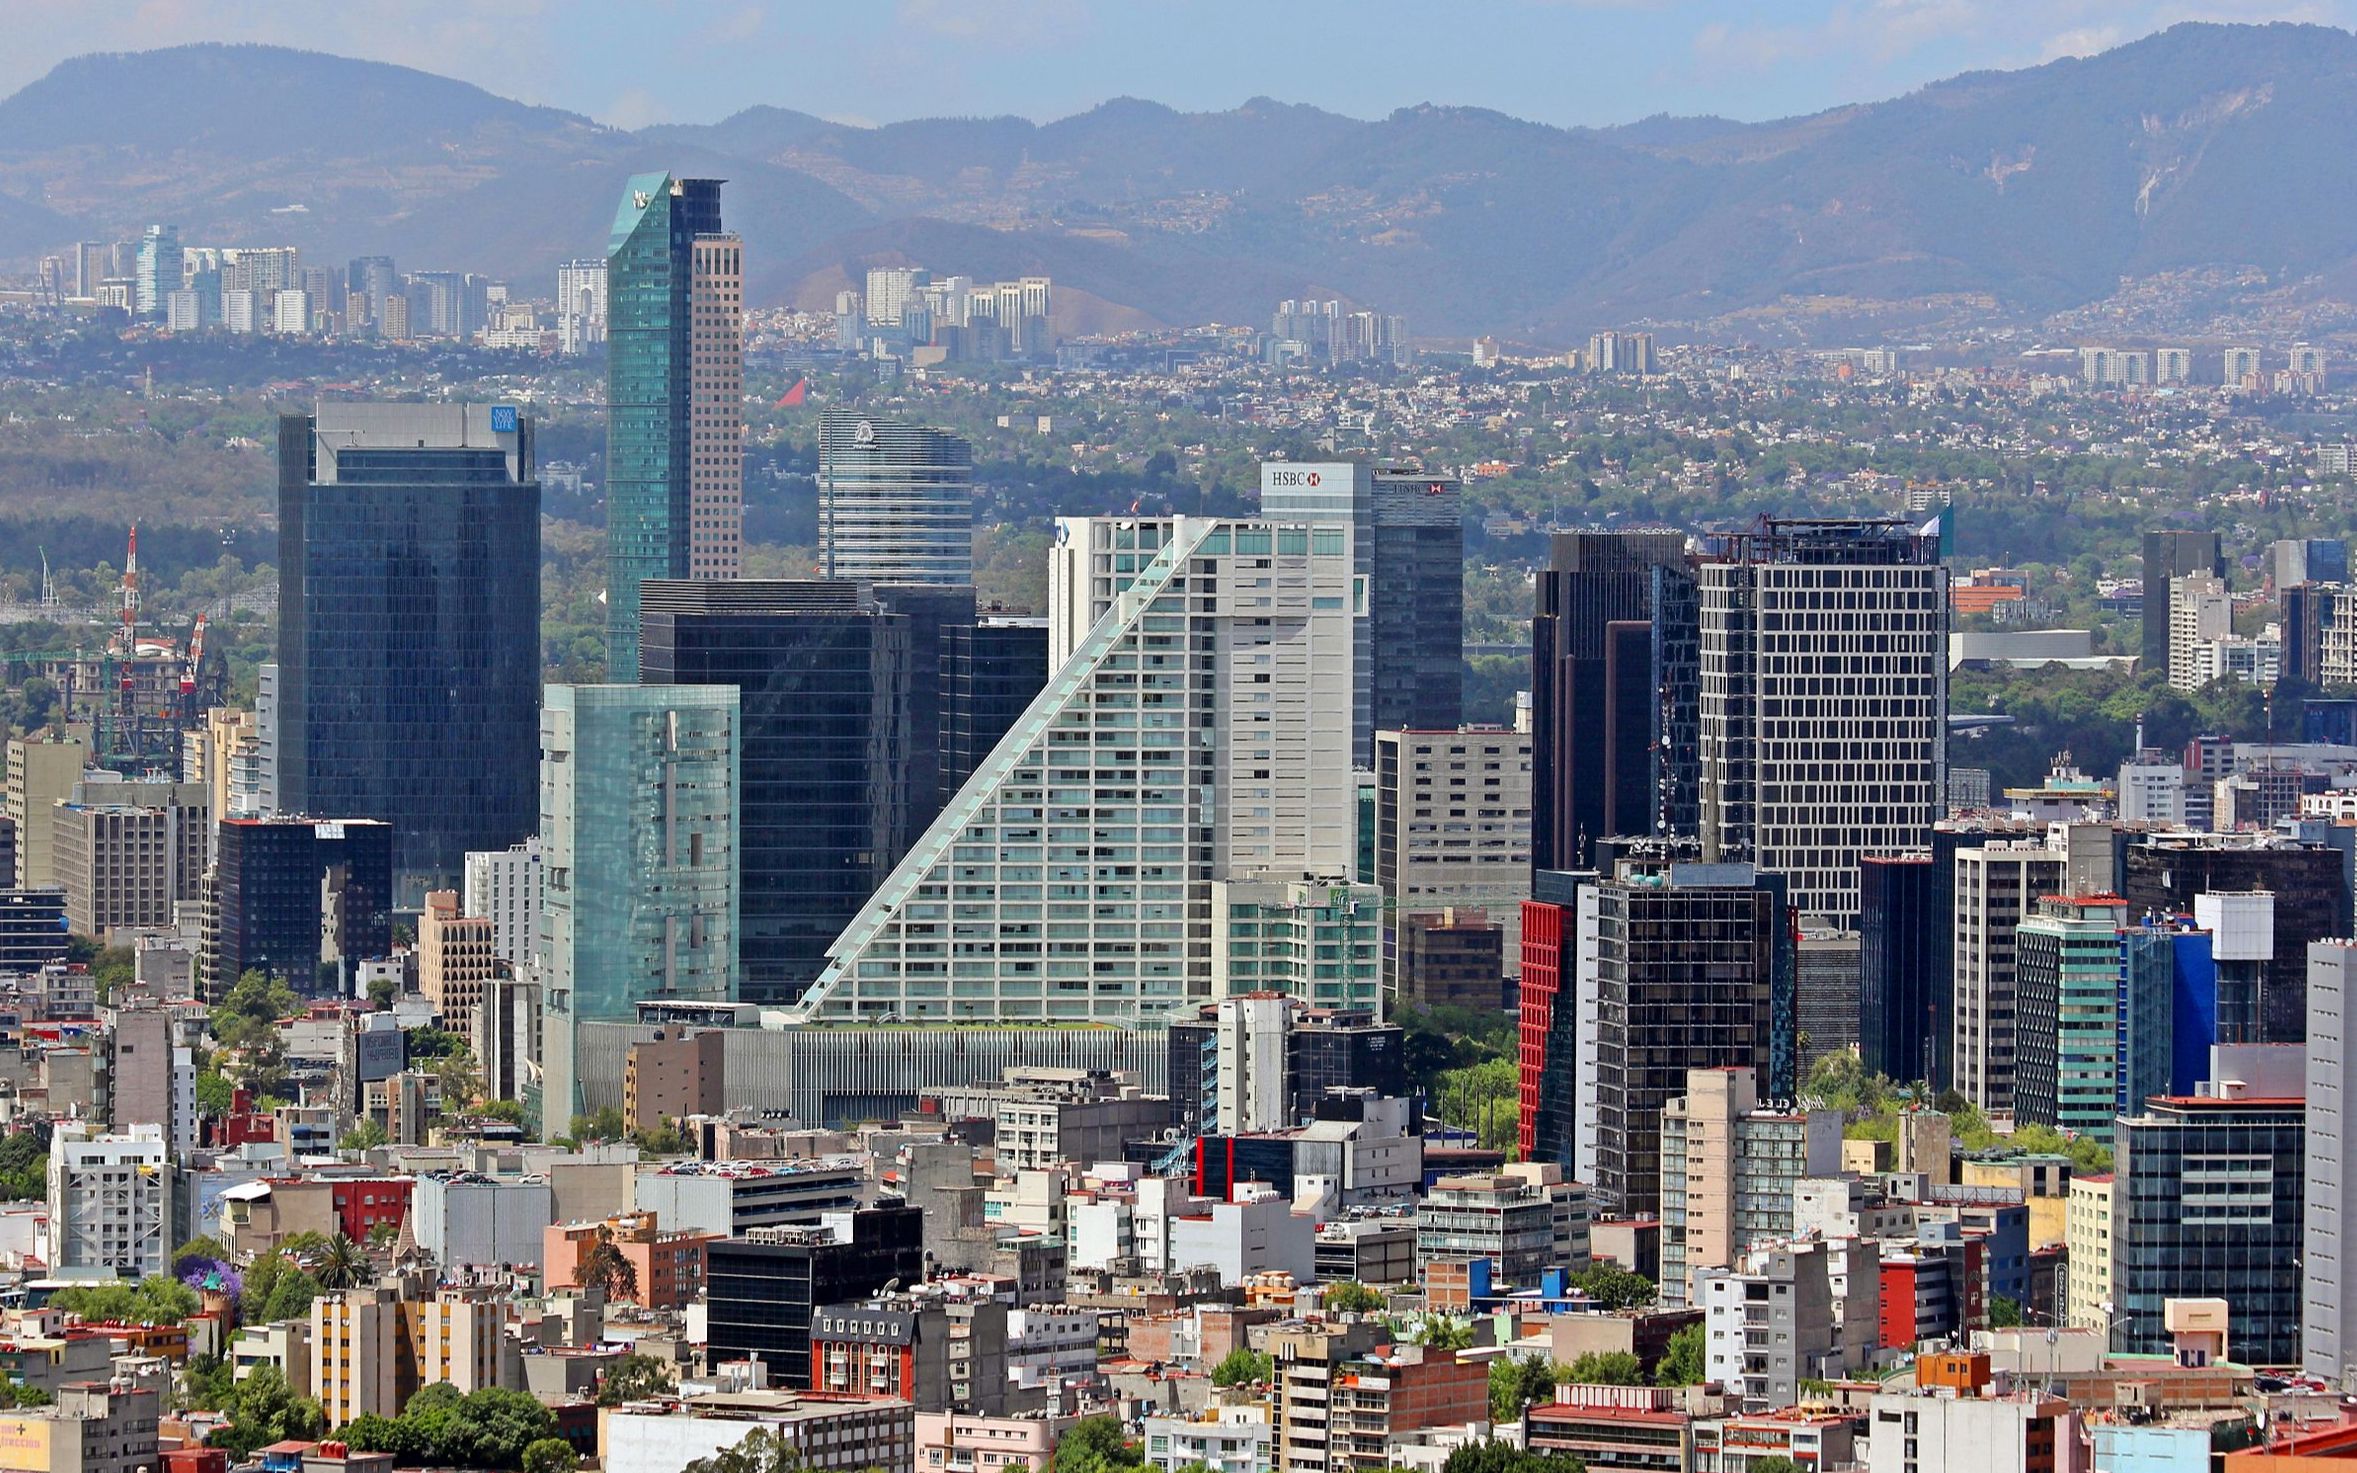 世界人口最多的城市之一,墨西哥合众国首都—墨西哥城(ciudad de